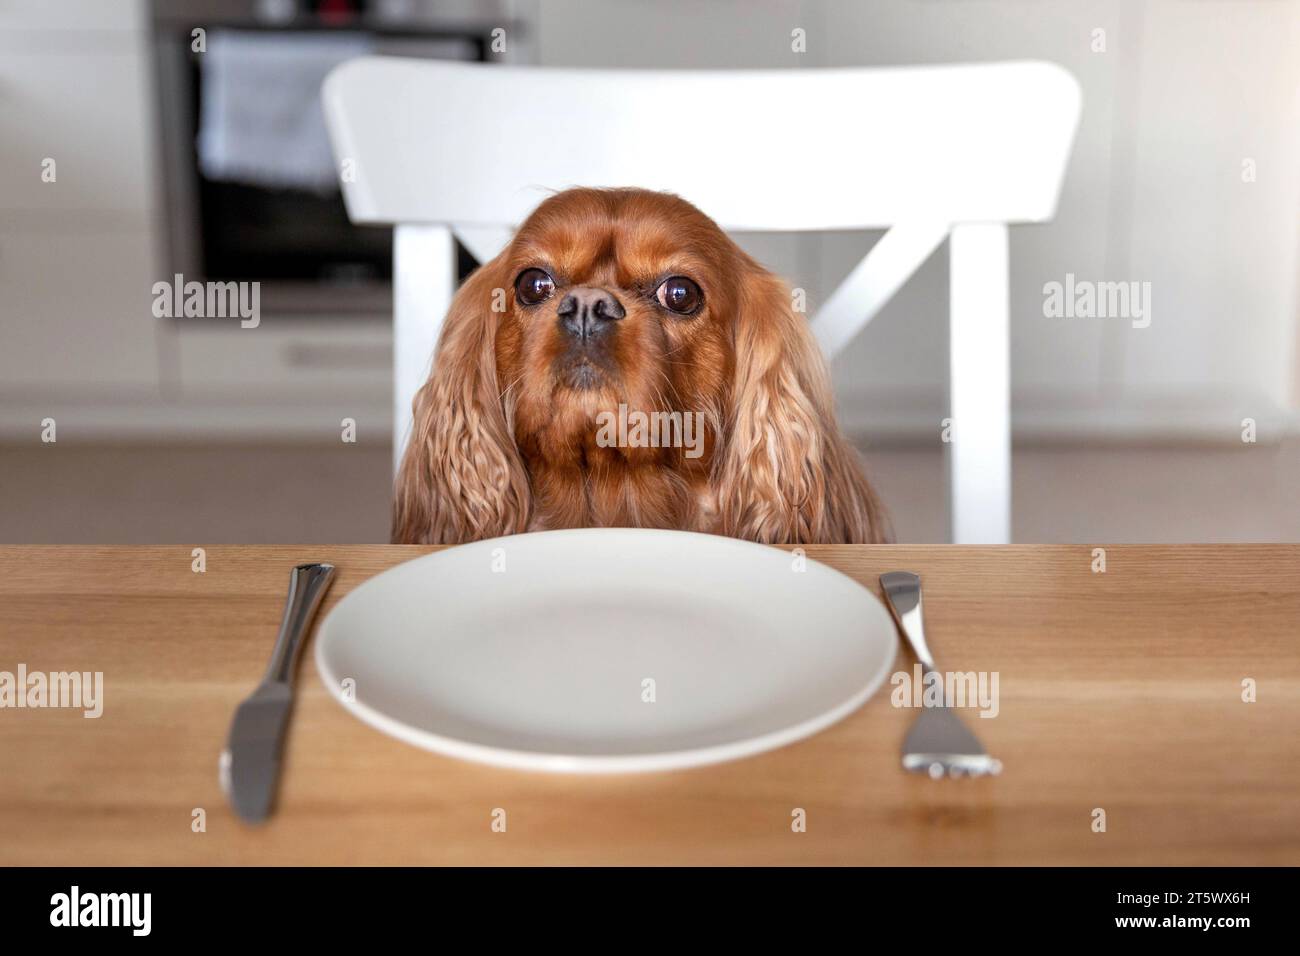 Ritratto di un simpatico cane in attesa del pasto dal tavolo della cucina Foto Stock